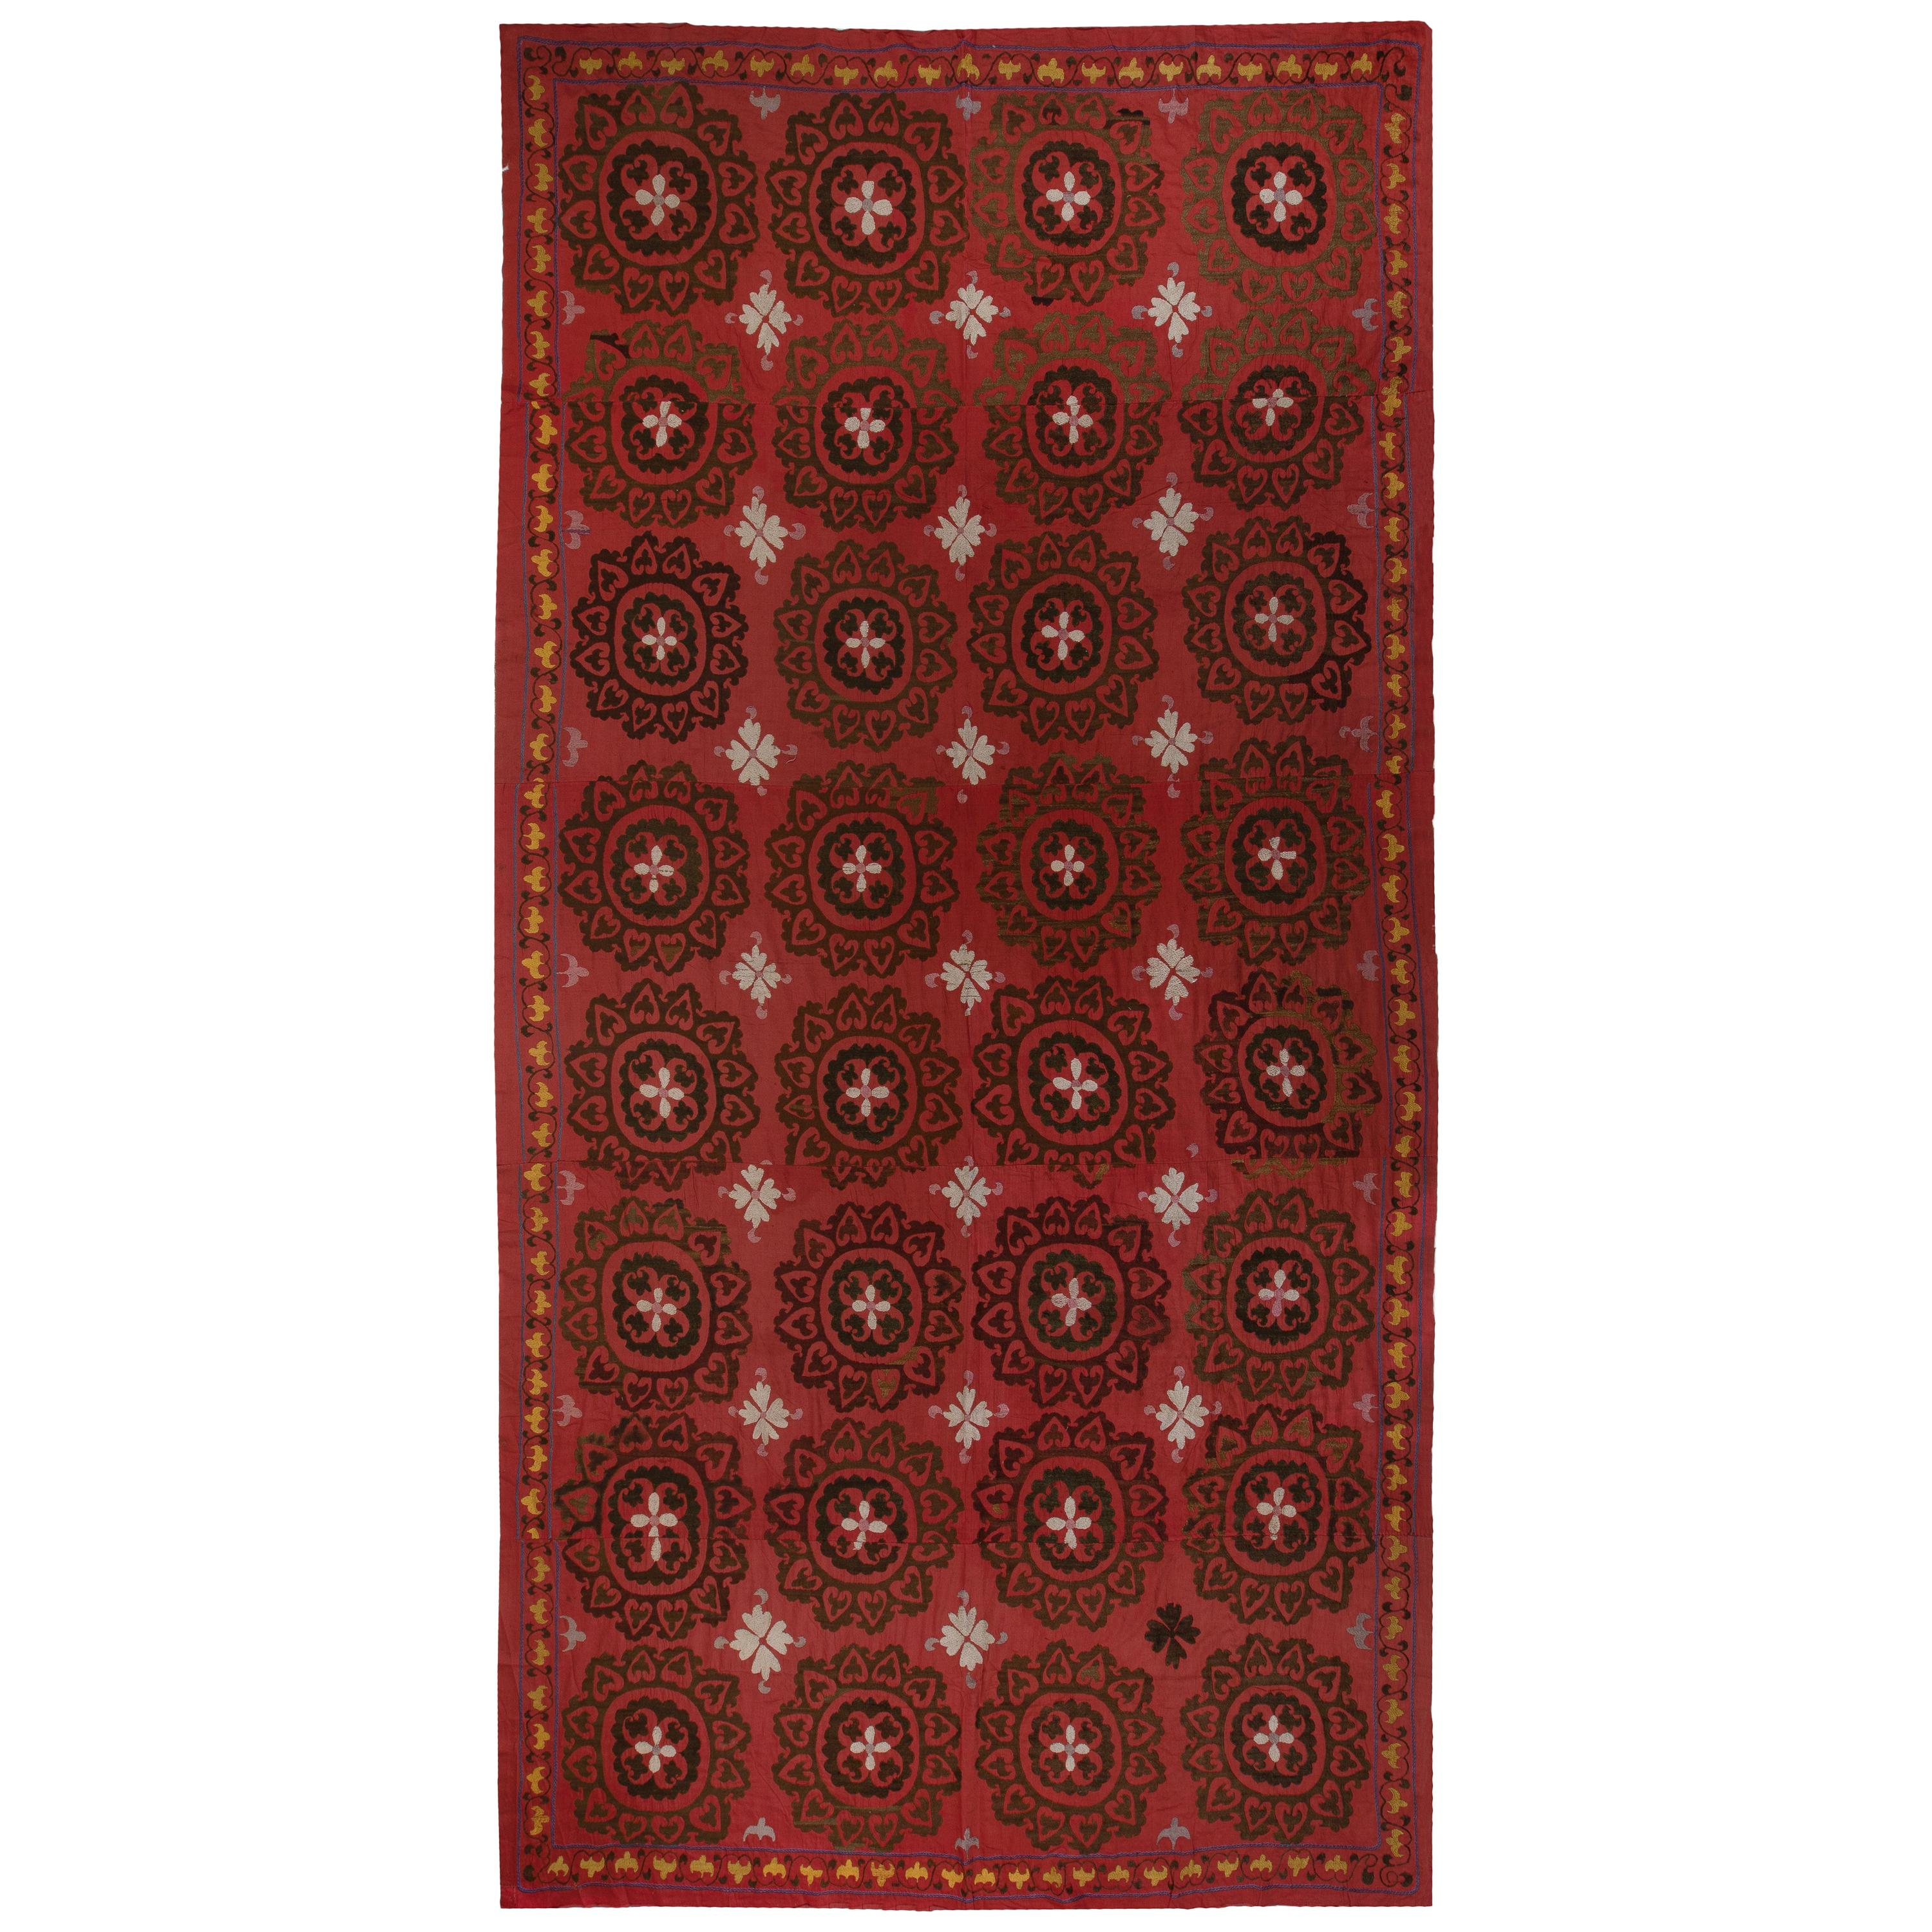 Textile Suzani Asie centrale 6,6x12,3 Ft, tenture murale en coton et soie brodée